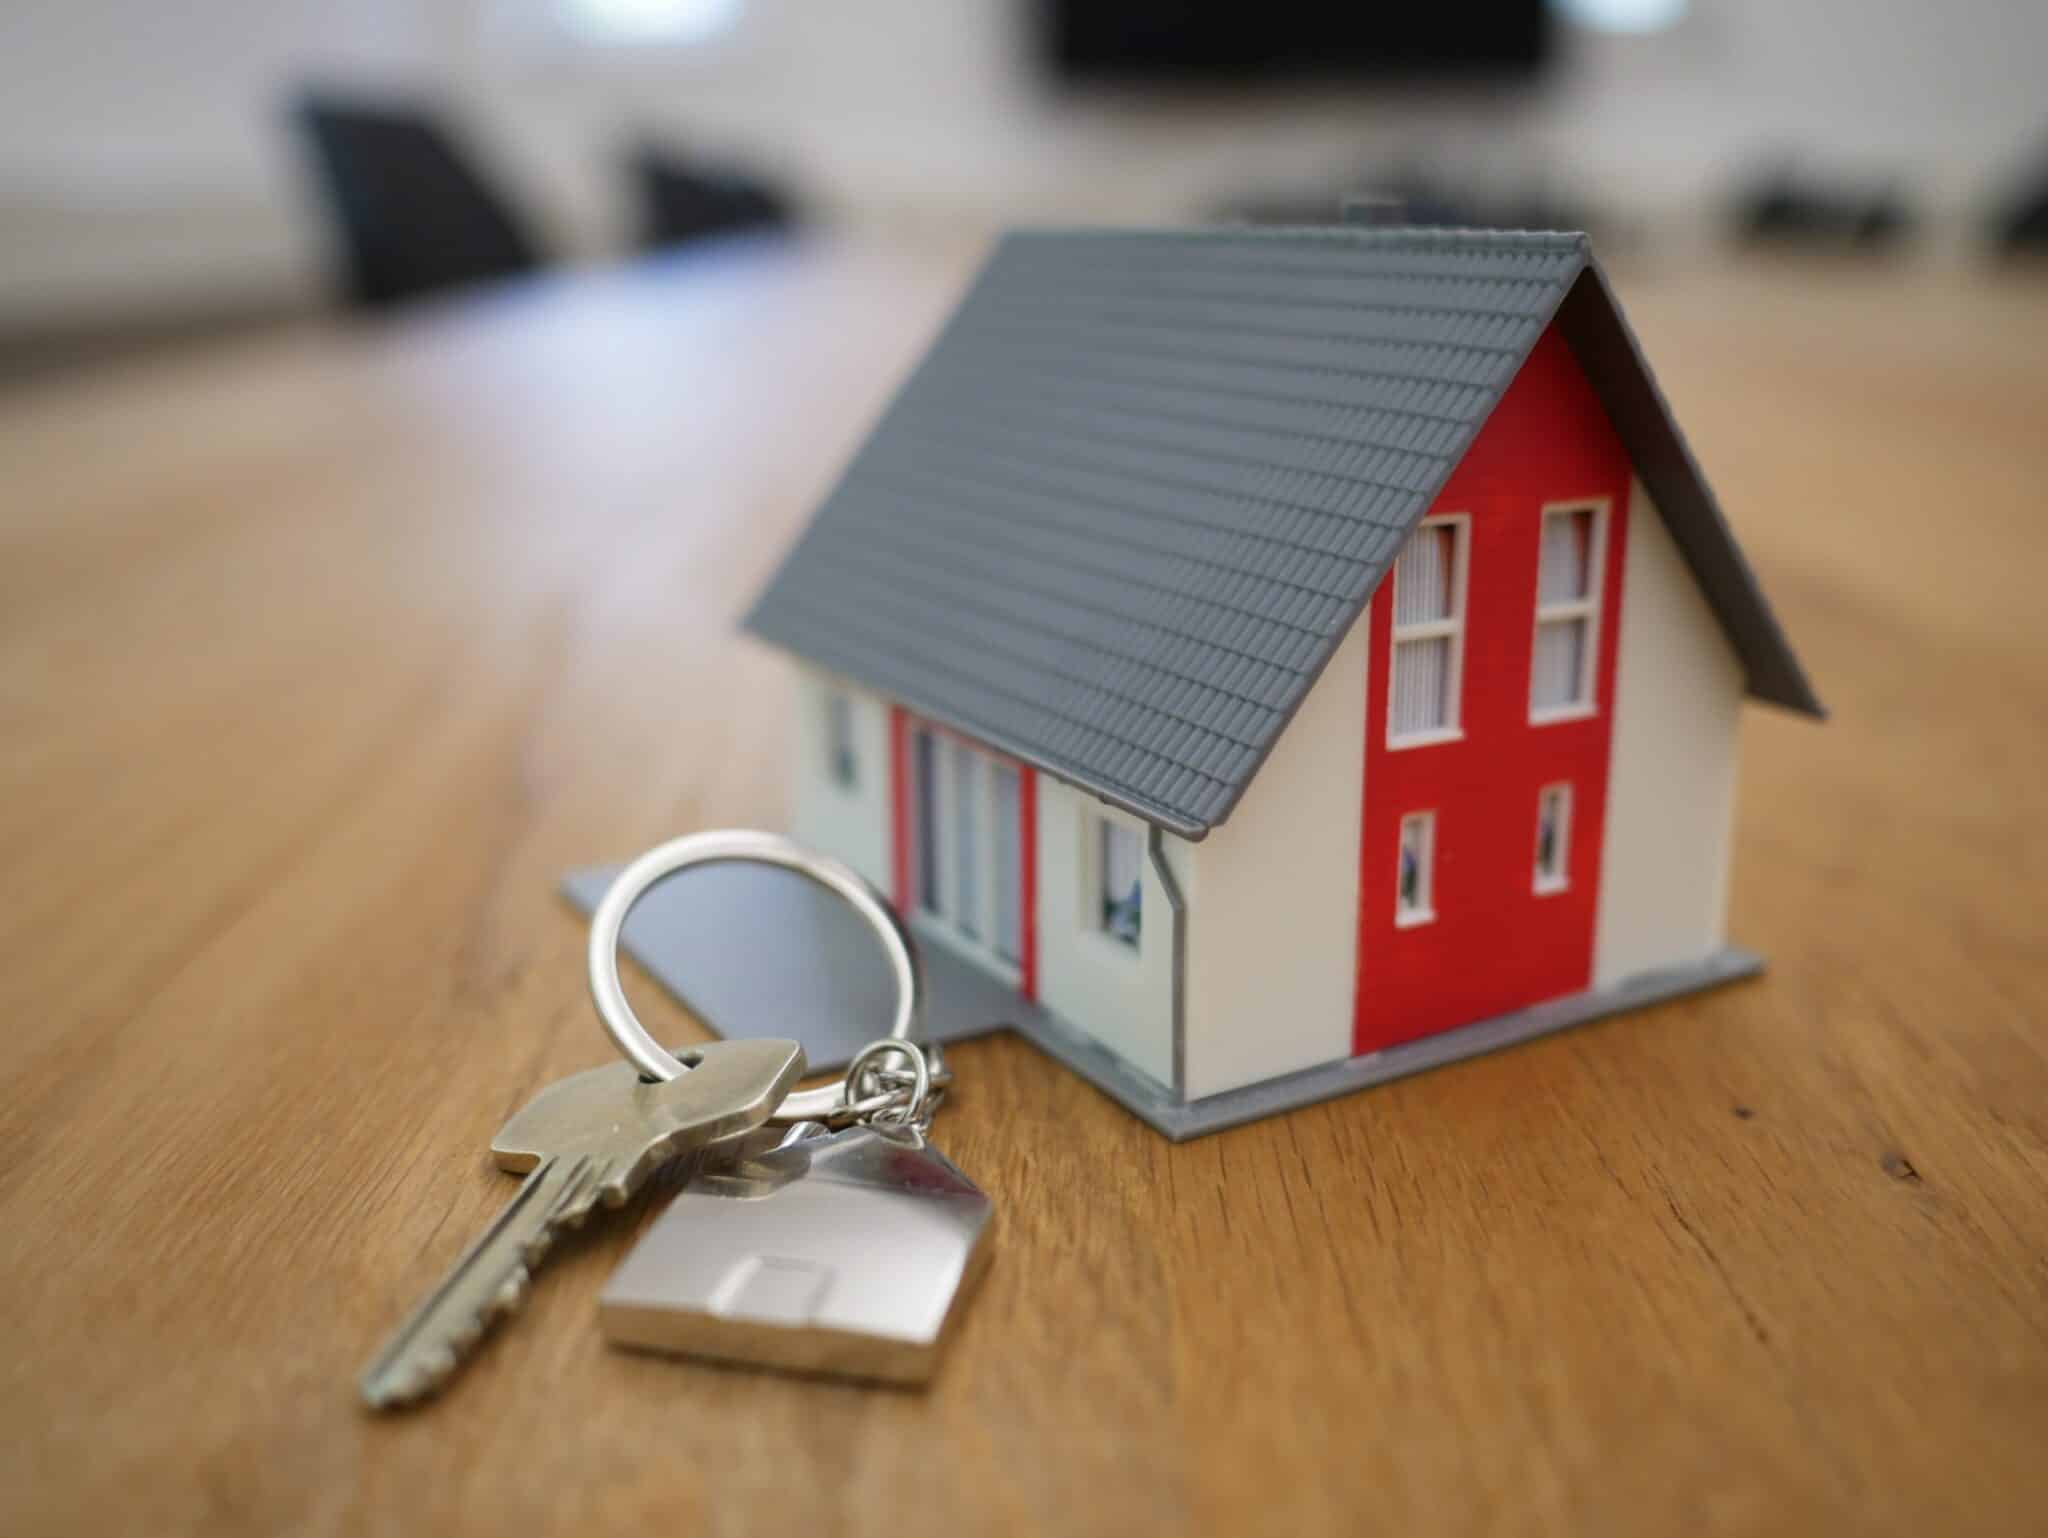 Tranh chấp về hợp đồng thuê nhà